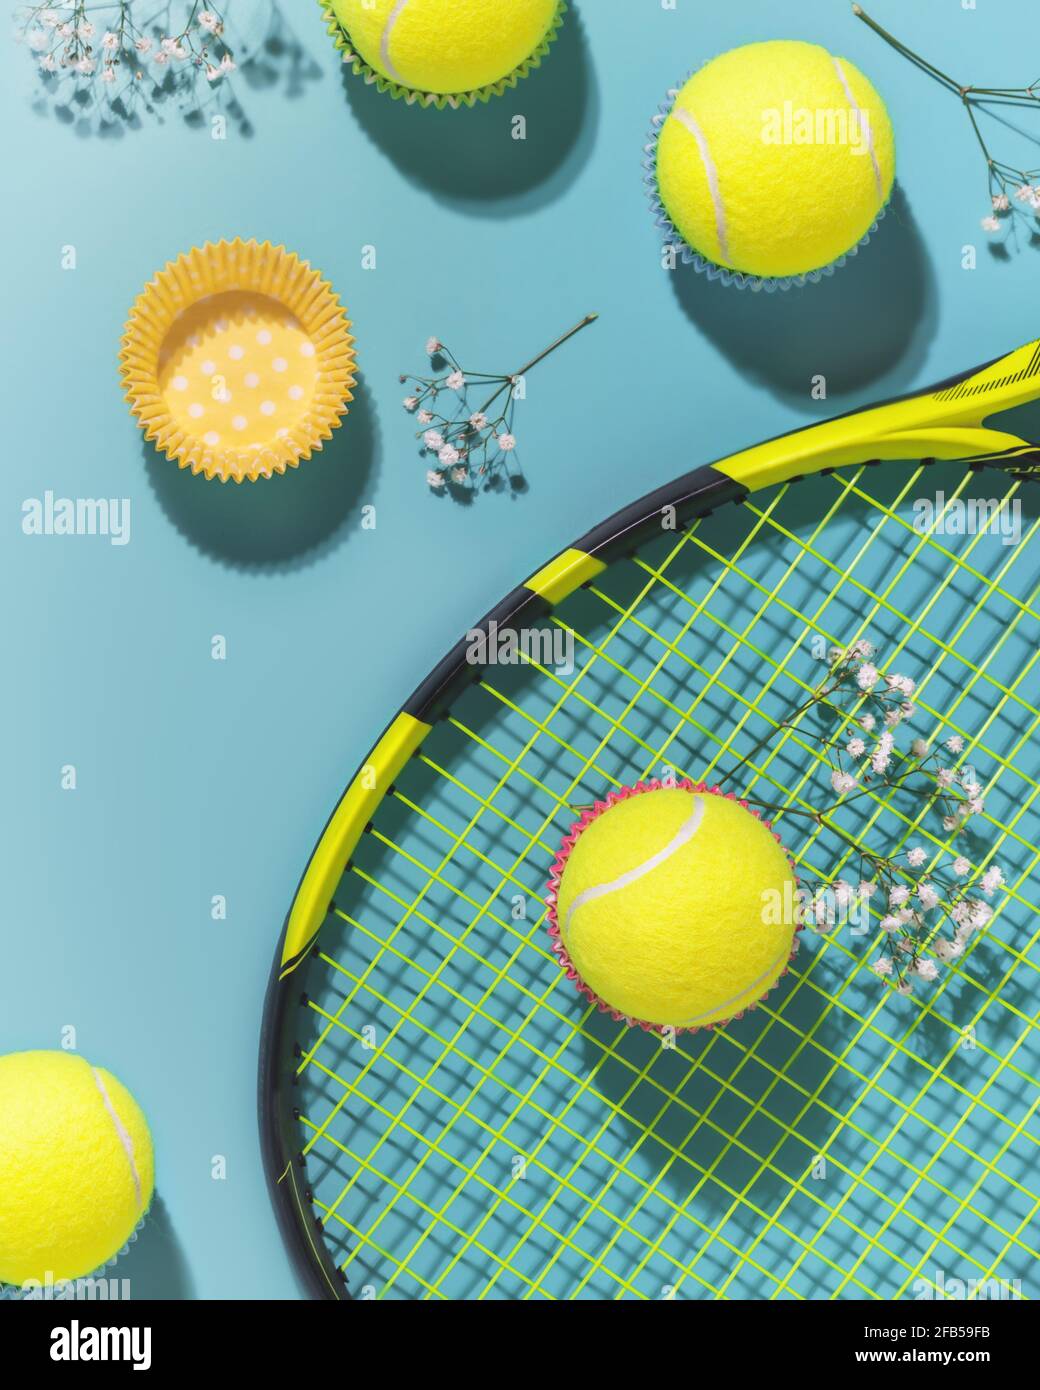 Composition sportive de Holliday avec balles de tennis jaunes et raquette sur fond bleu d'un court de tennis dur. Le sport et un mode de vie sain. Le concept de Banque D'Images